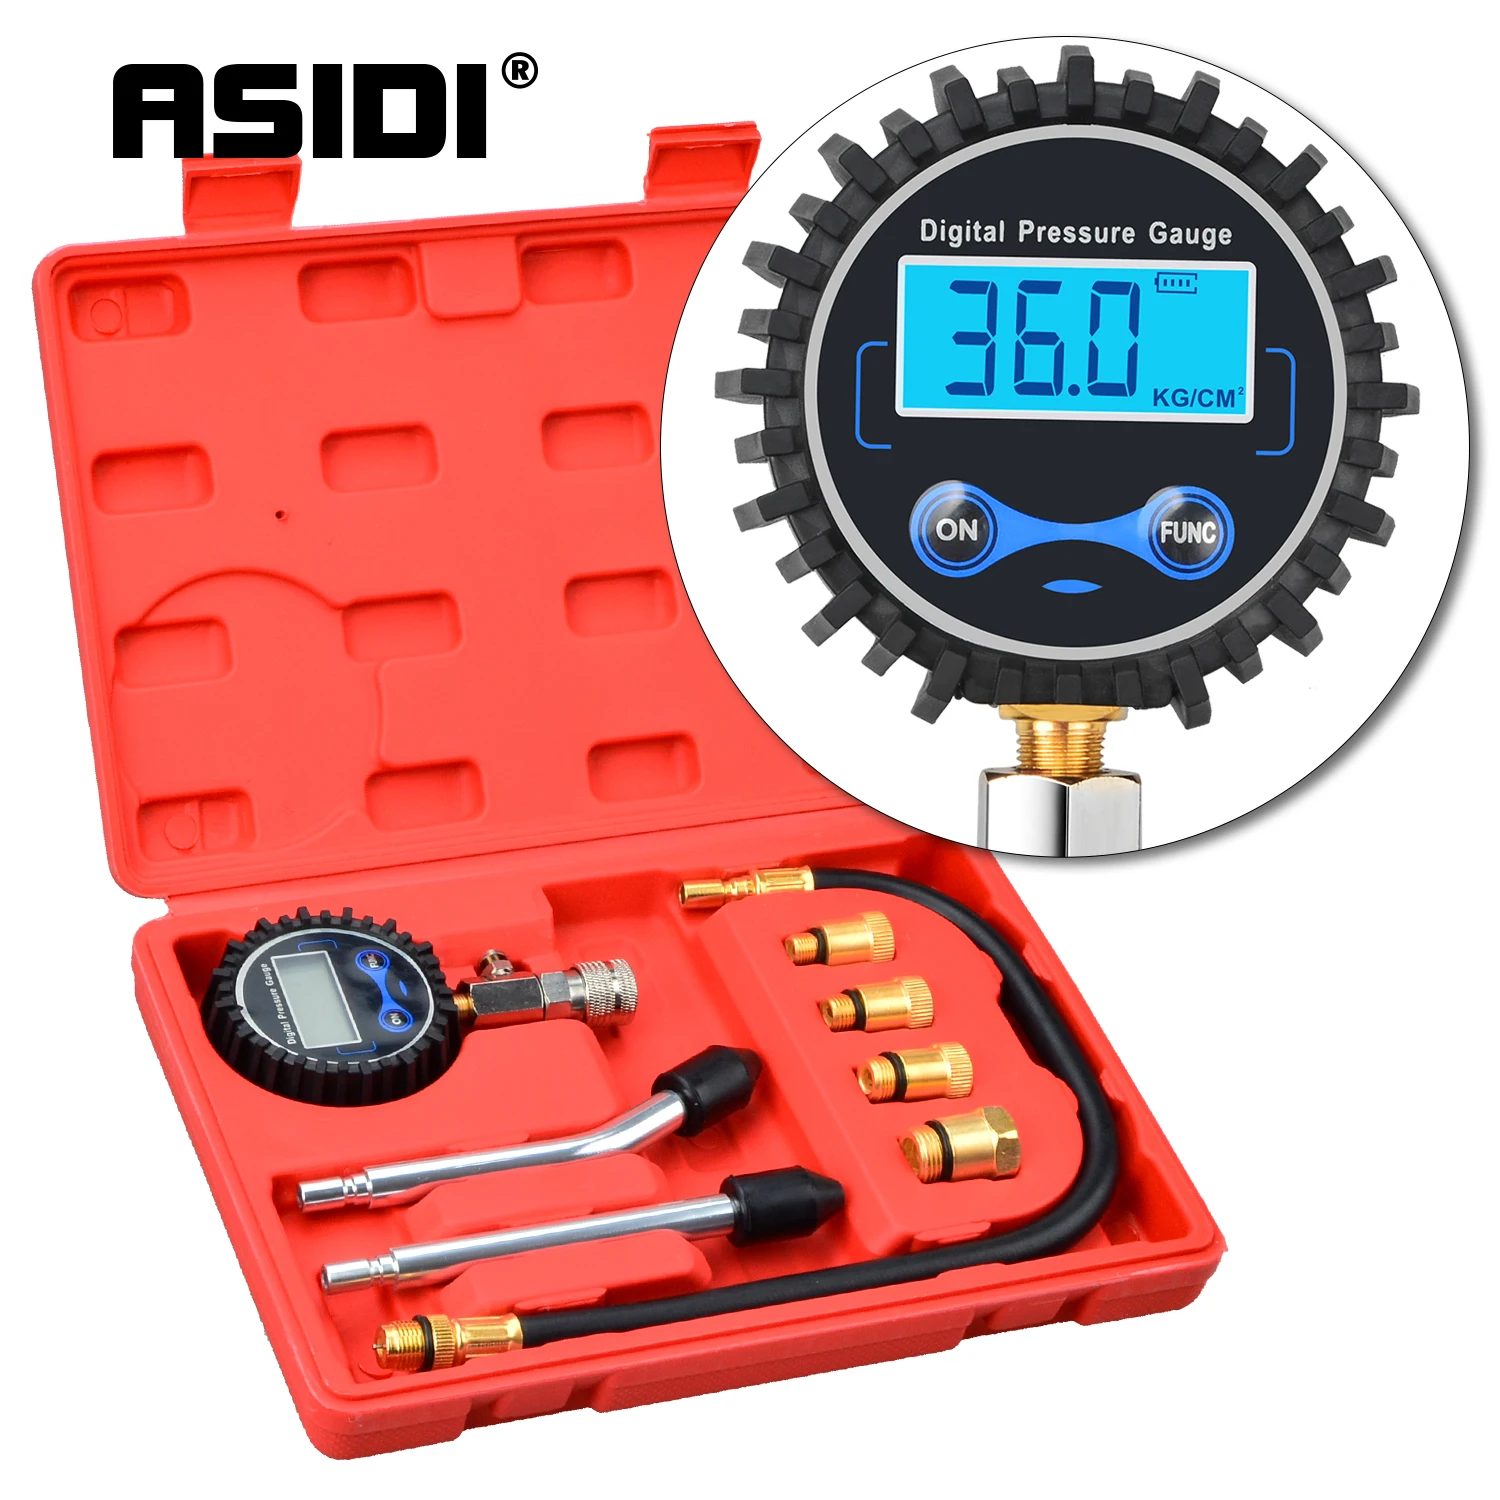 

Цифровой компрессионный тестер ASIDI, комплект для проверки давления в бензиновом двигателе, цилиндре, мотоцикле